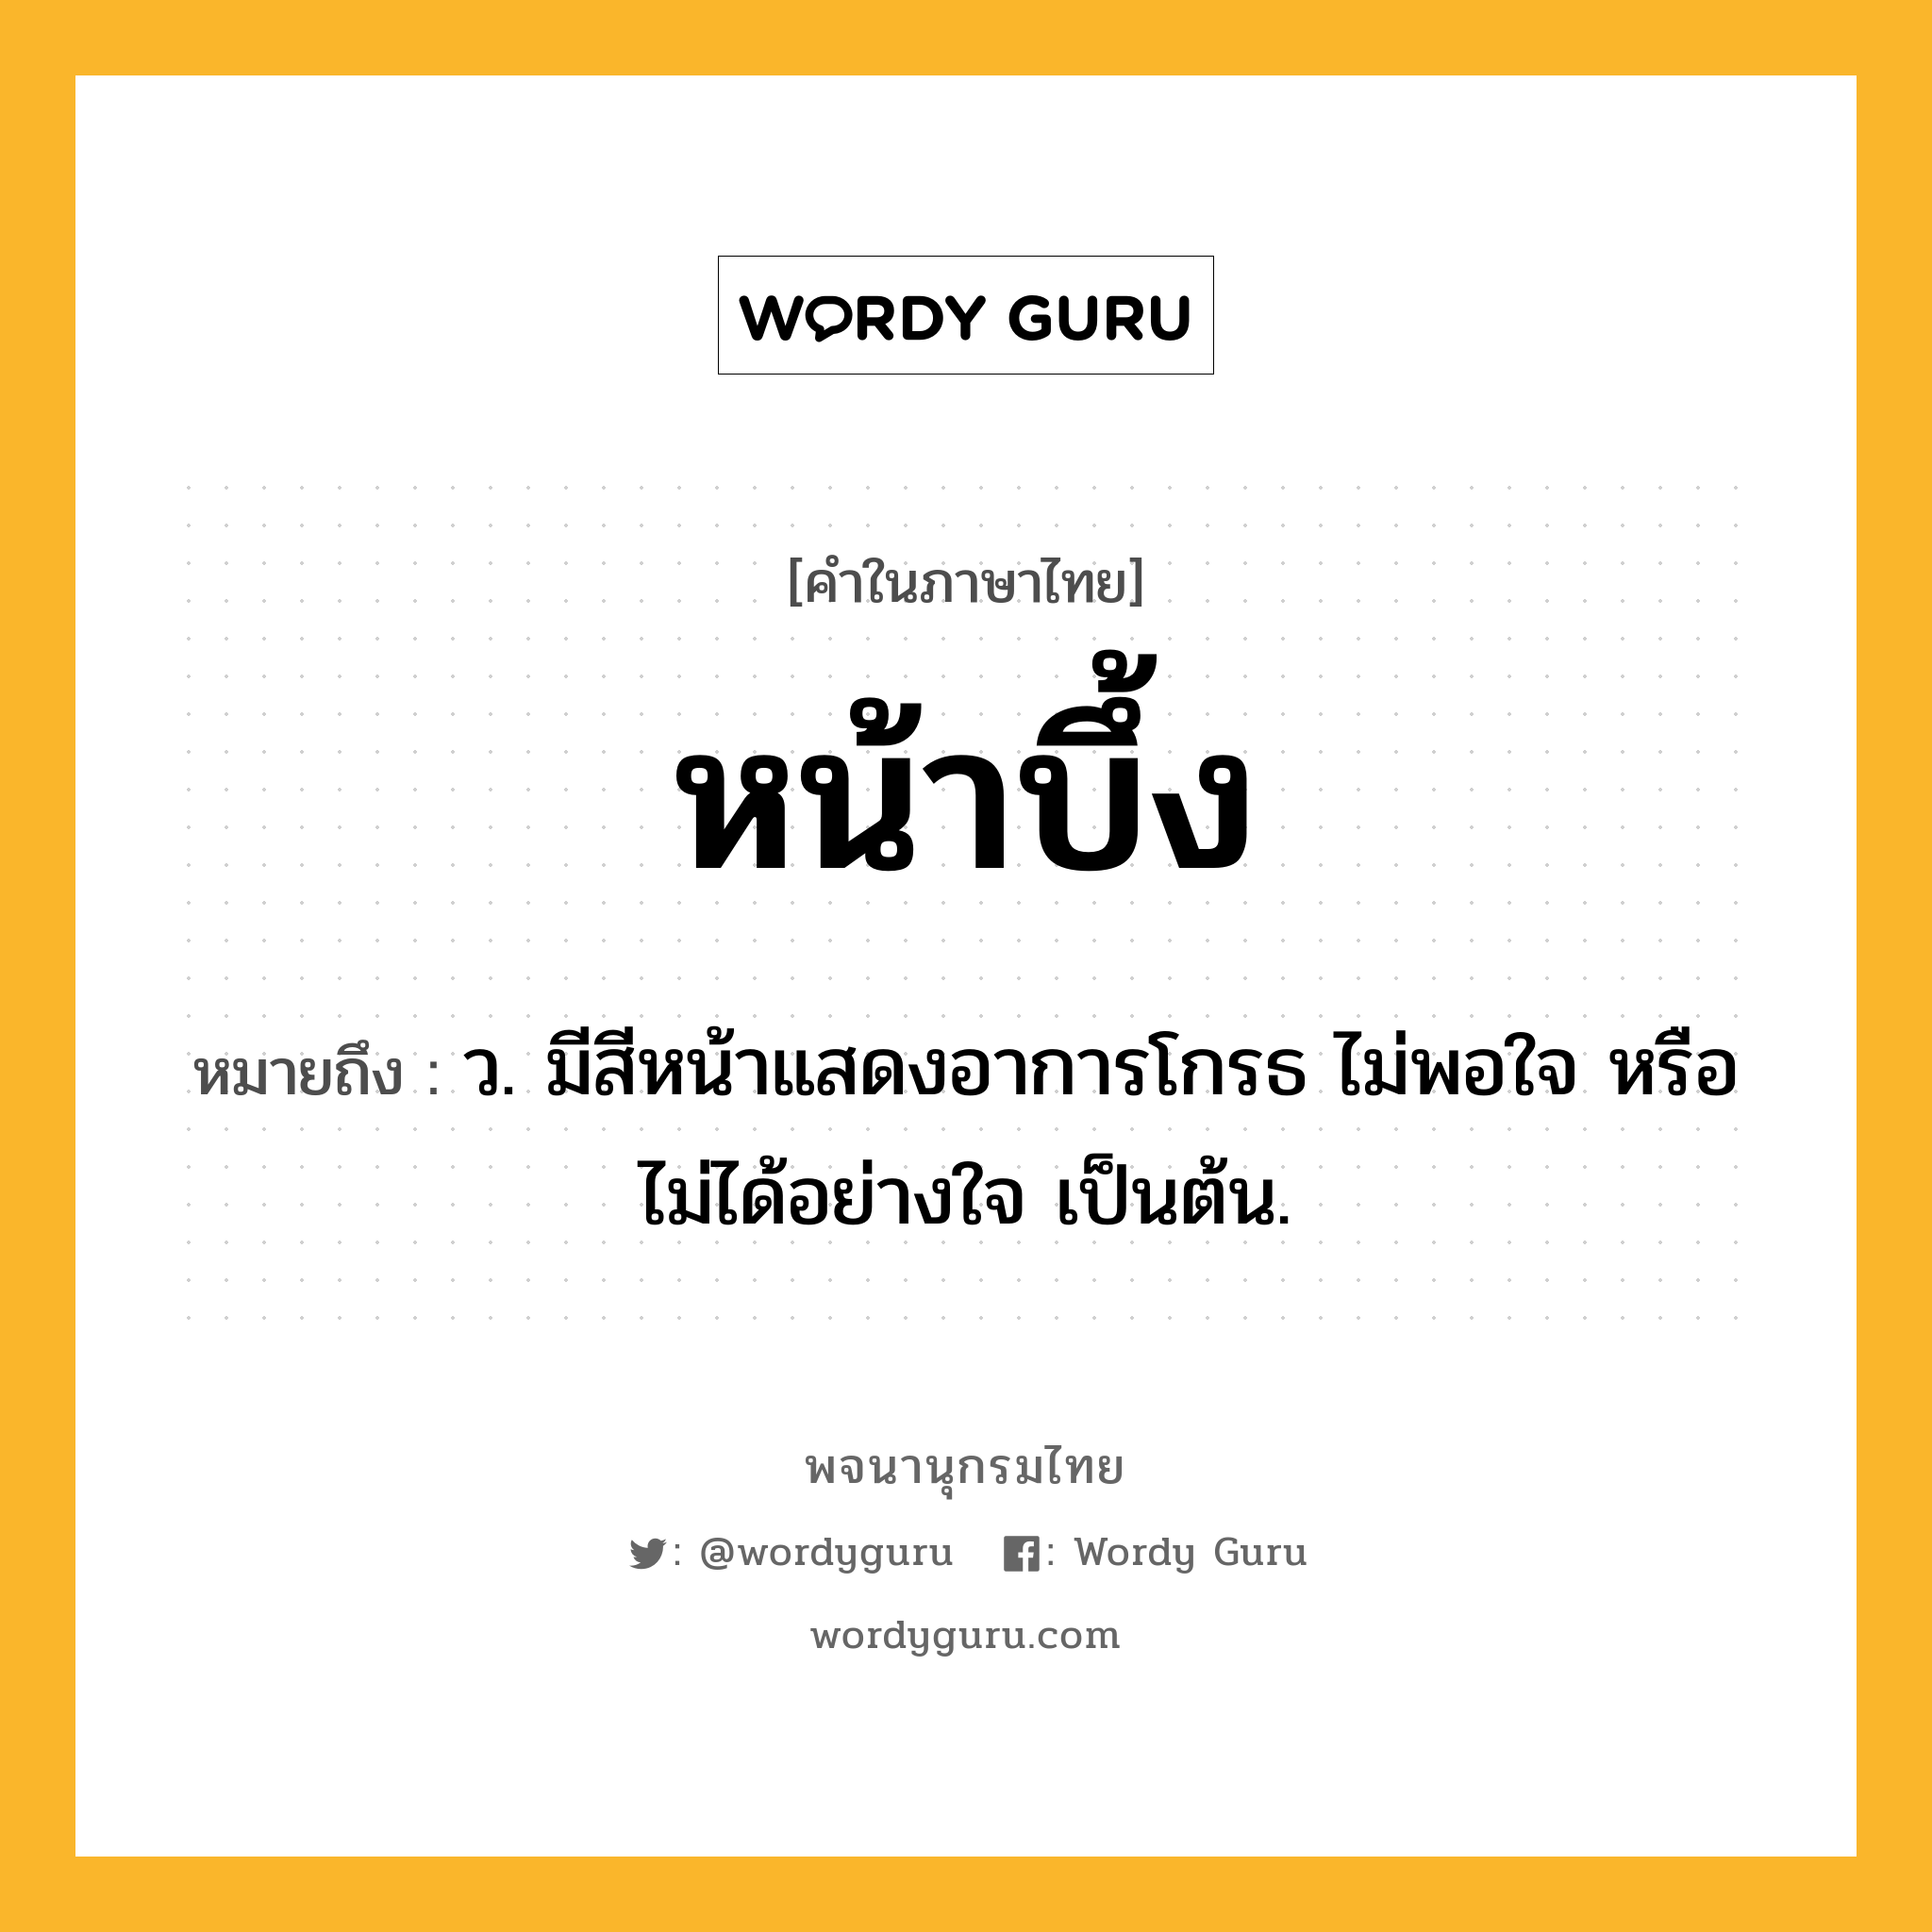 หน้าบึ้ง หมายถึงอะไร?, คำในภาษาไทย หน้าบึ้ง หมายถึง ว. มีสีหน้าแสดงอาการโกรธ ไม่พอใจ หรือไม่ได้อย่างใจ เป็นต้น.